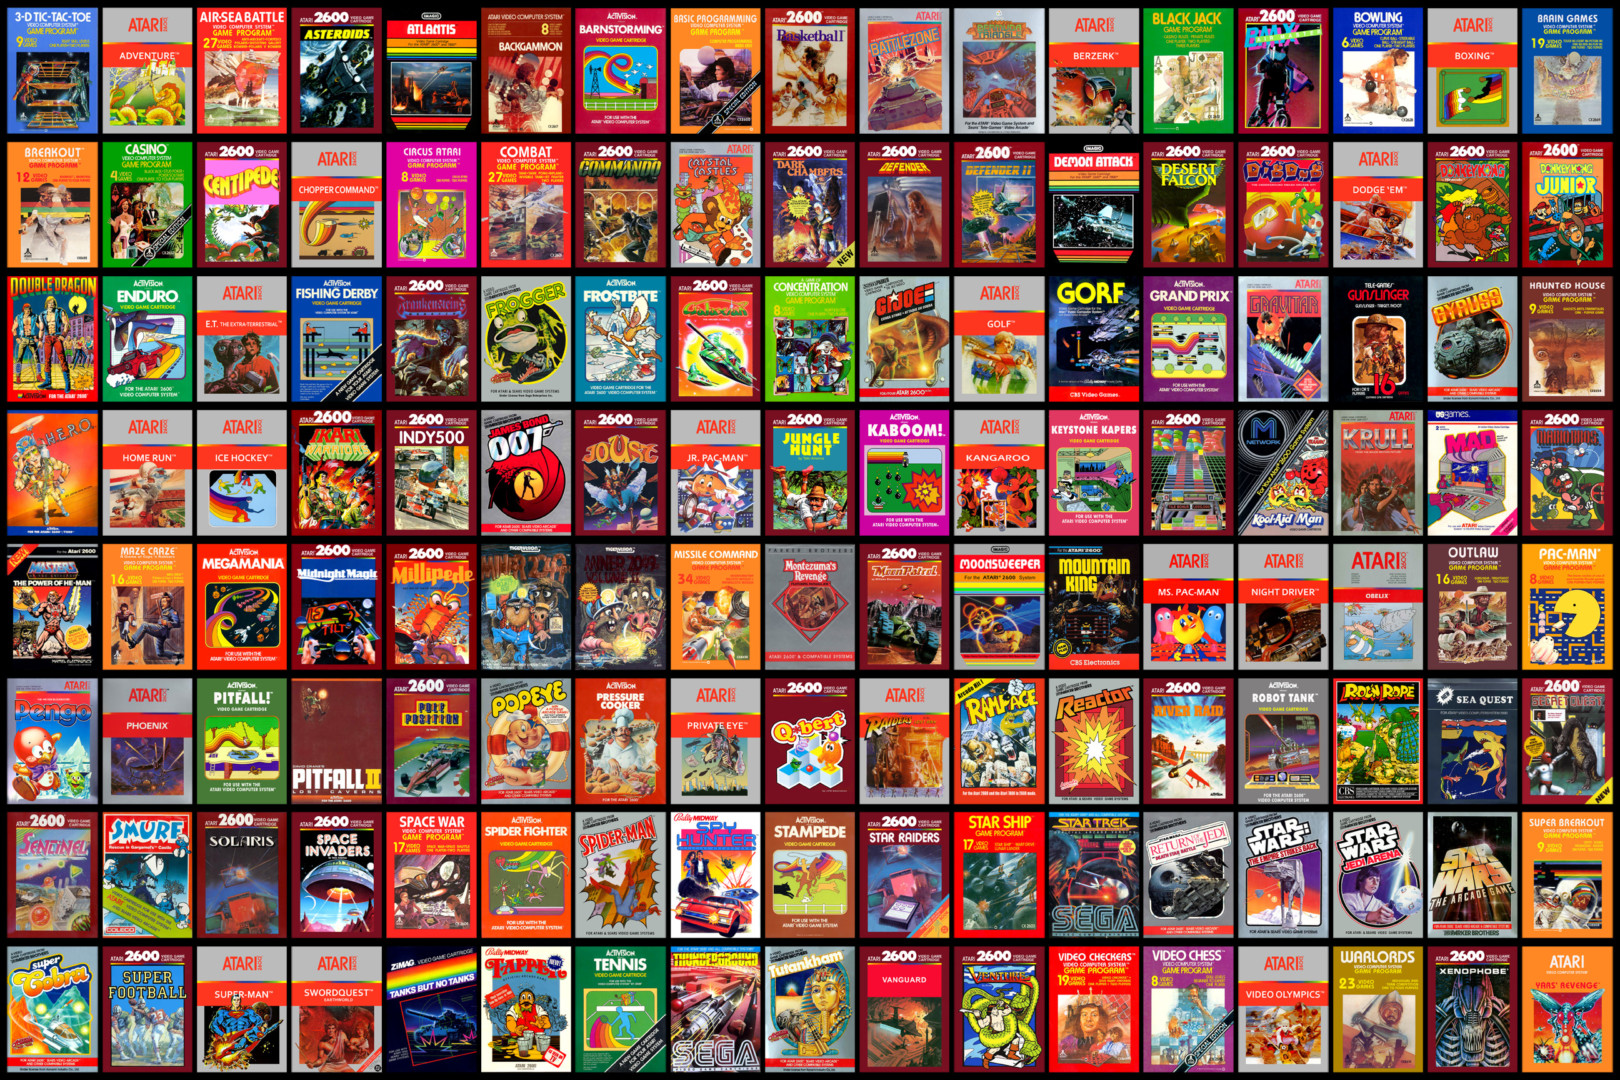 Atari Flashback para Nintendo Switch tendrá la colección de juegos más grande jamás compilada hasta el momento